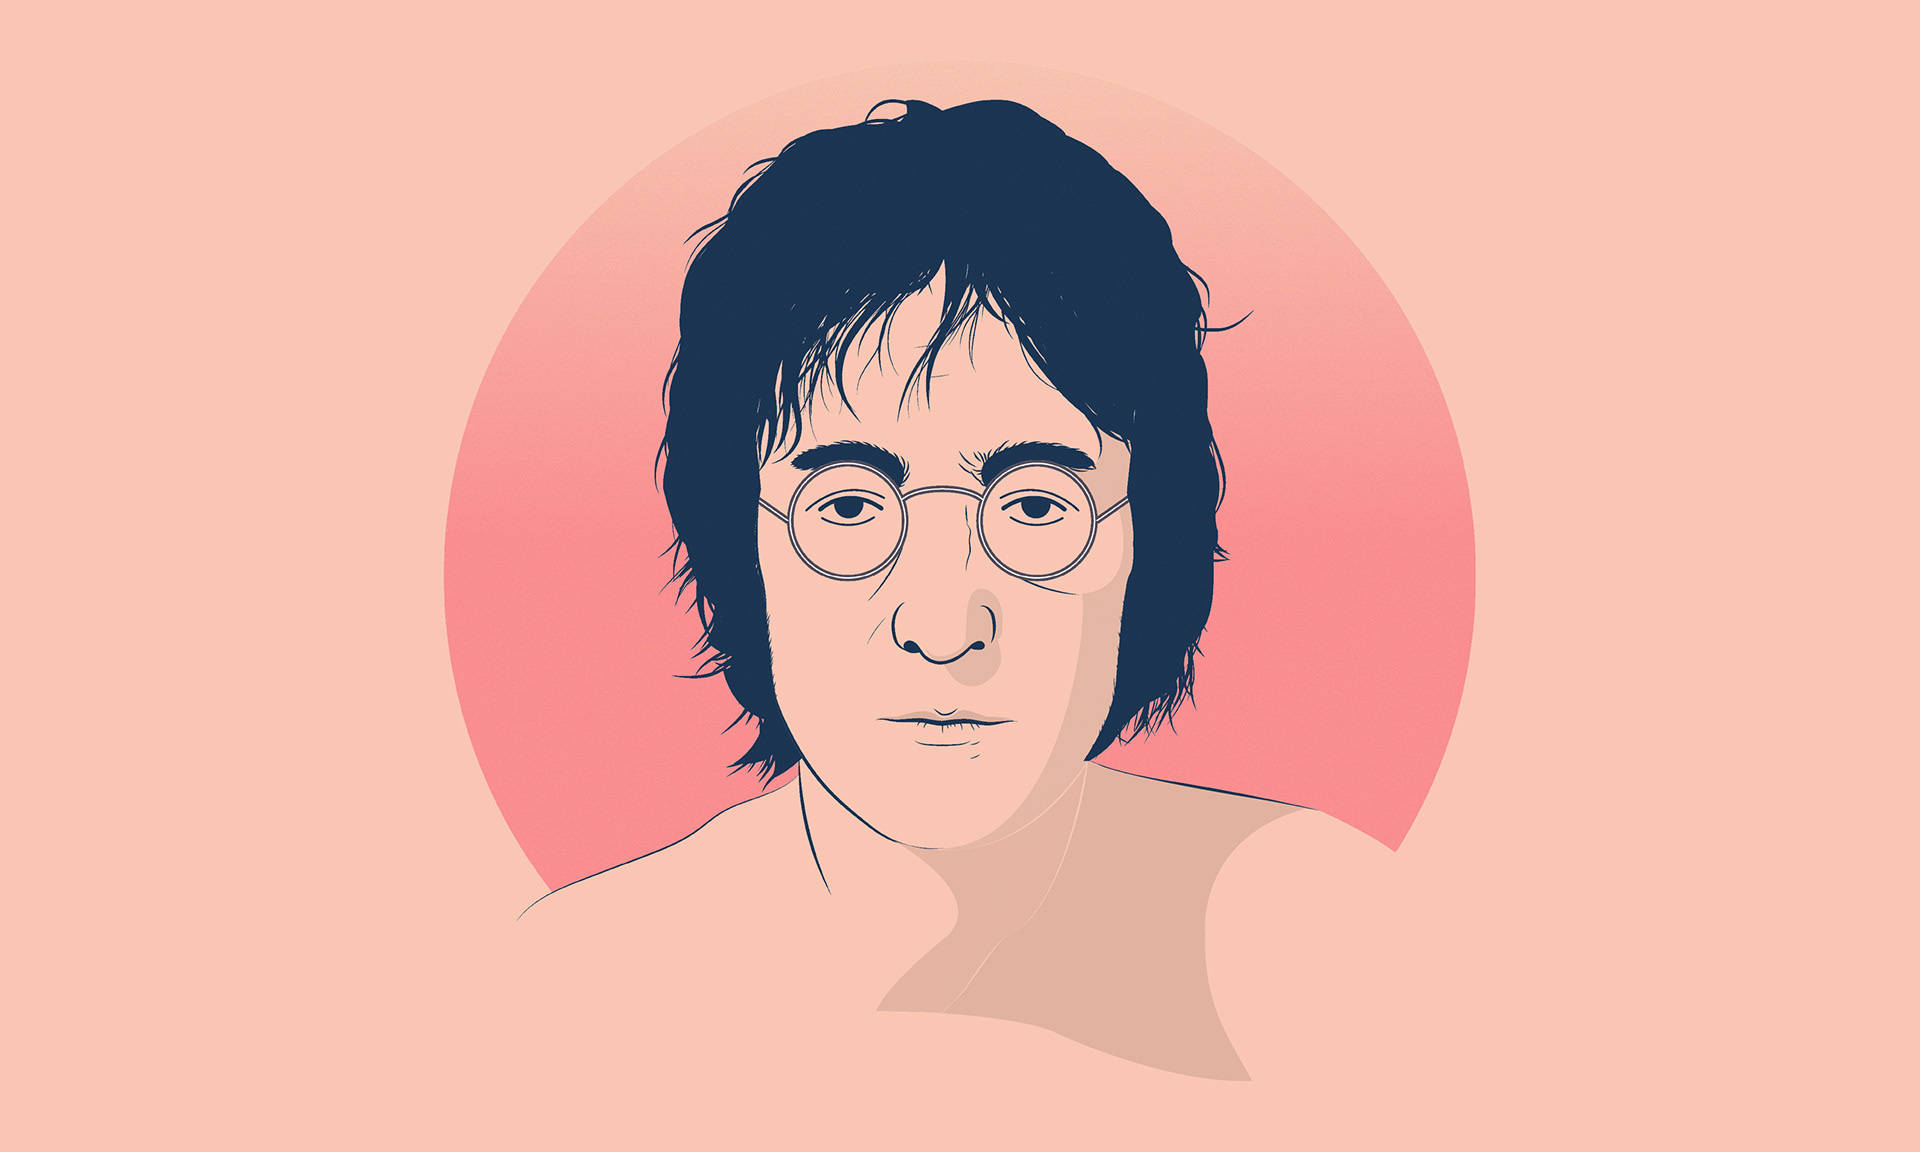 John Lennon Digital Illustration Background